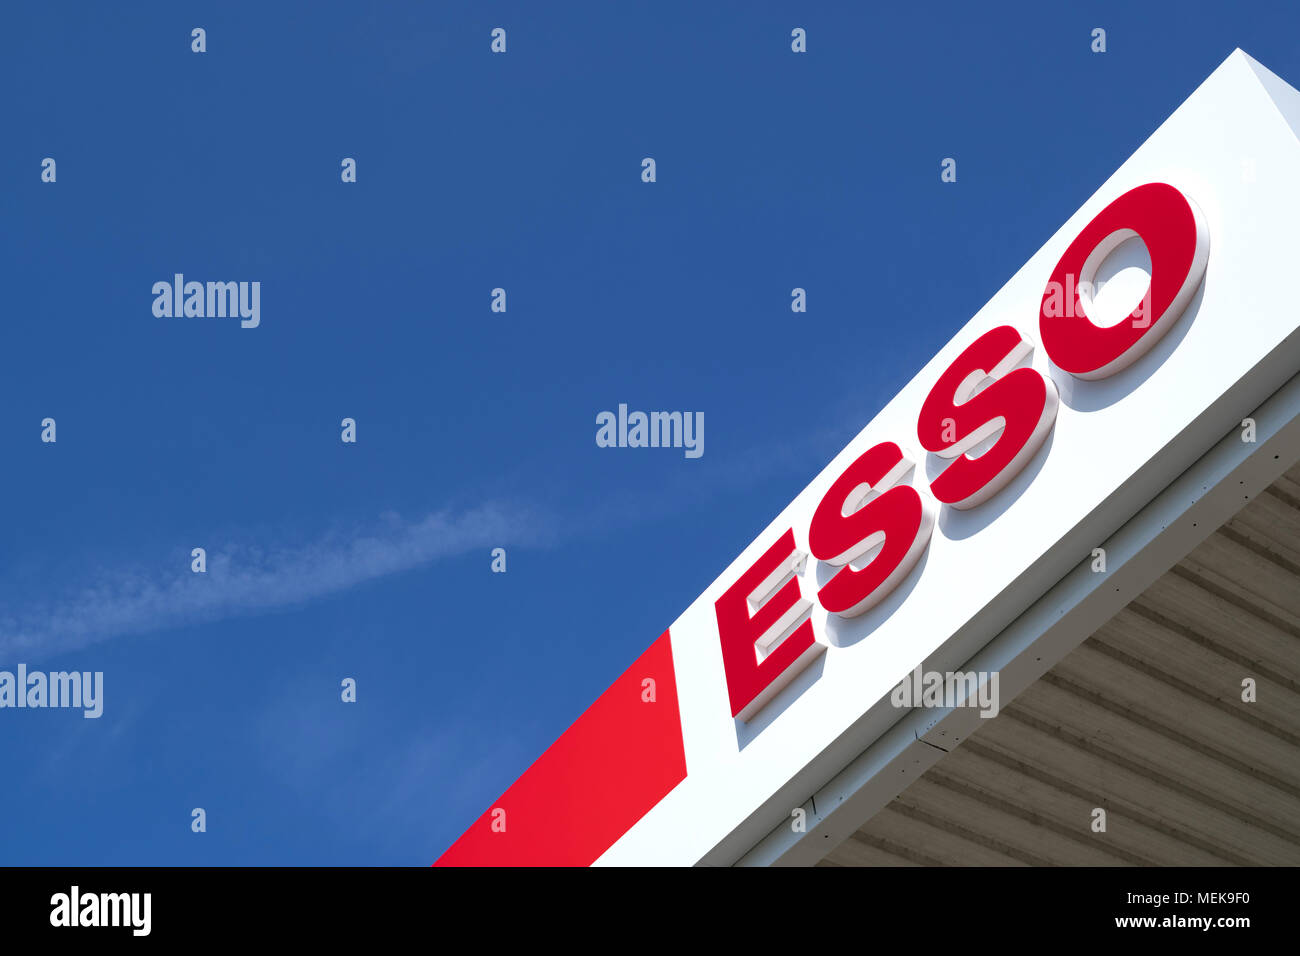 Station d'essence Esso à signer contre le ciel bleu. ExxonMobil Esso est l'essence principale de marque dans le monde entier. Banque D'Images